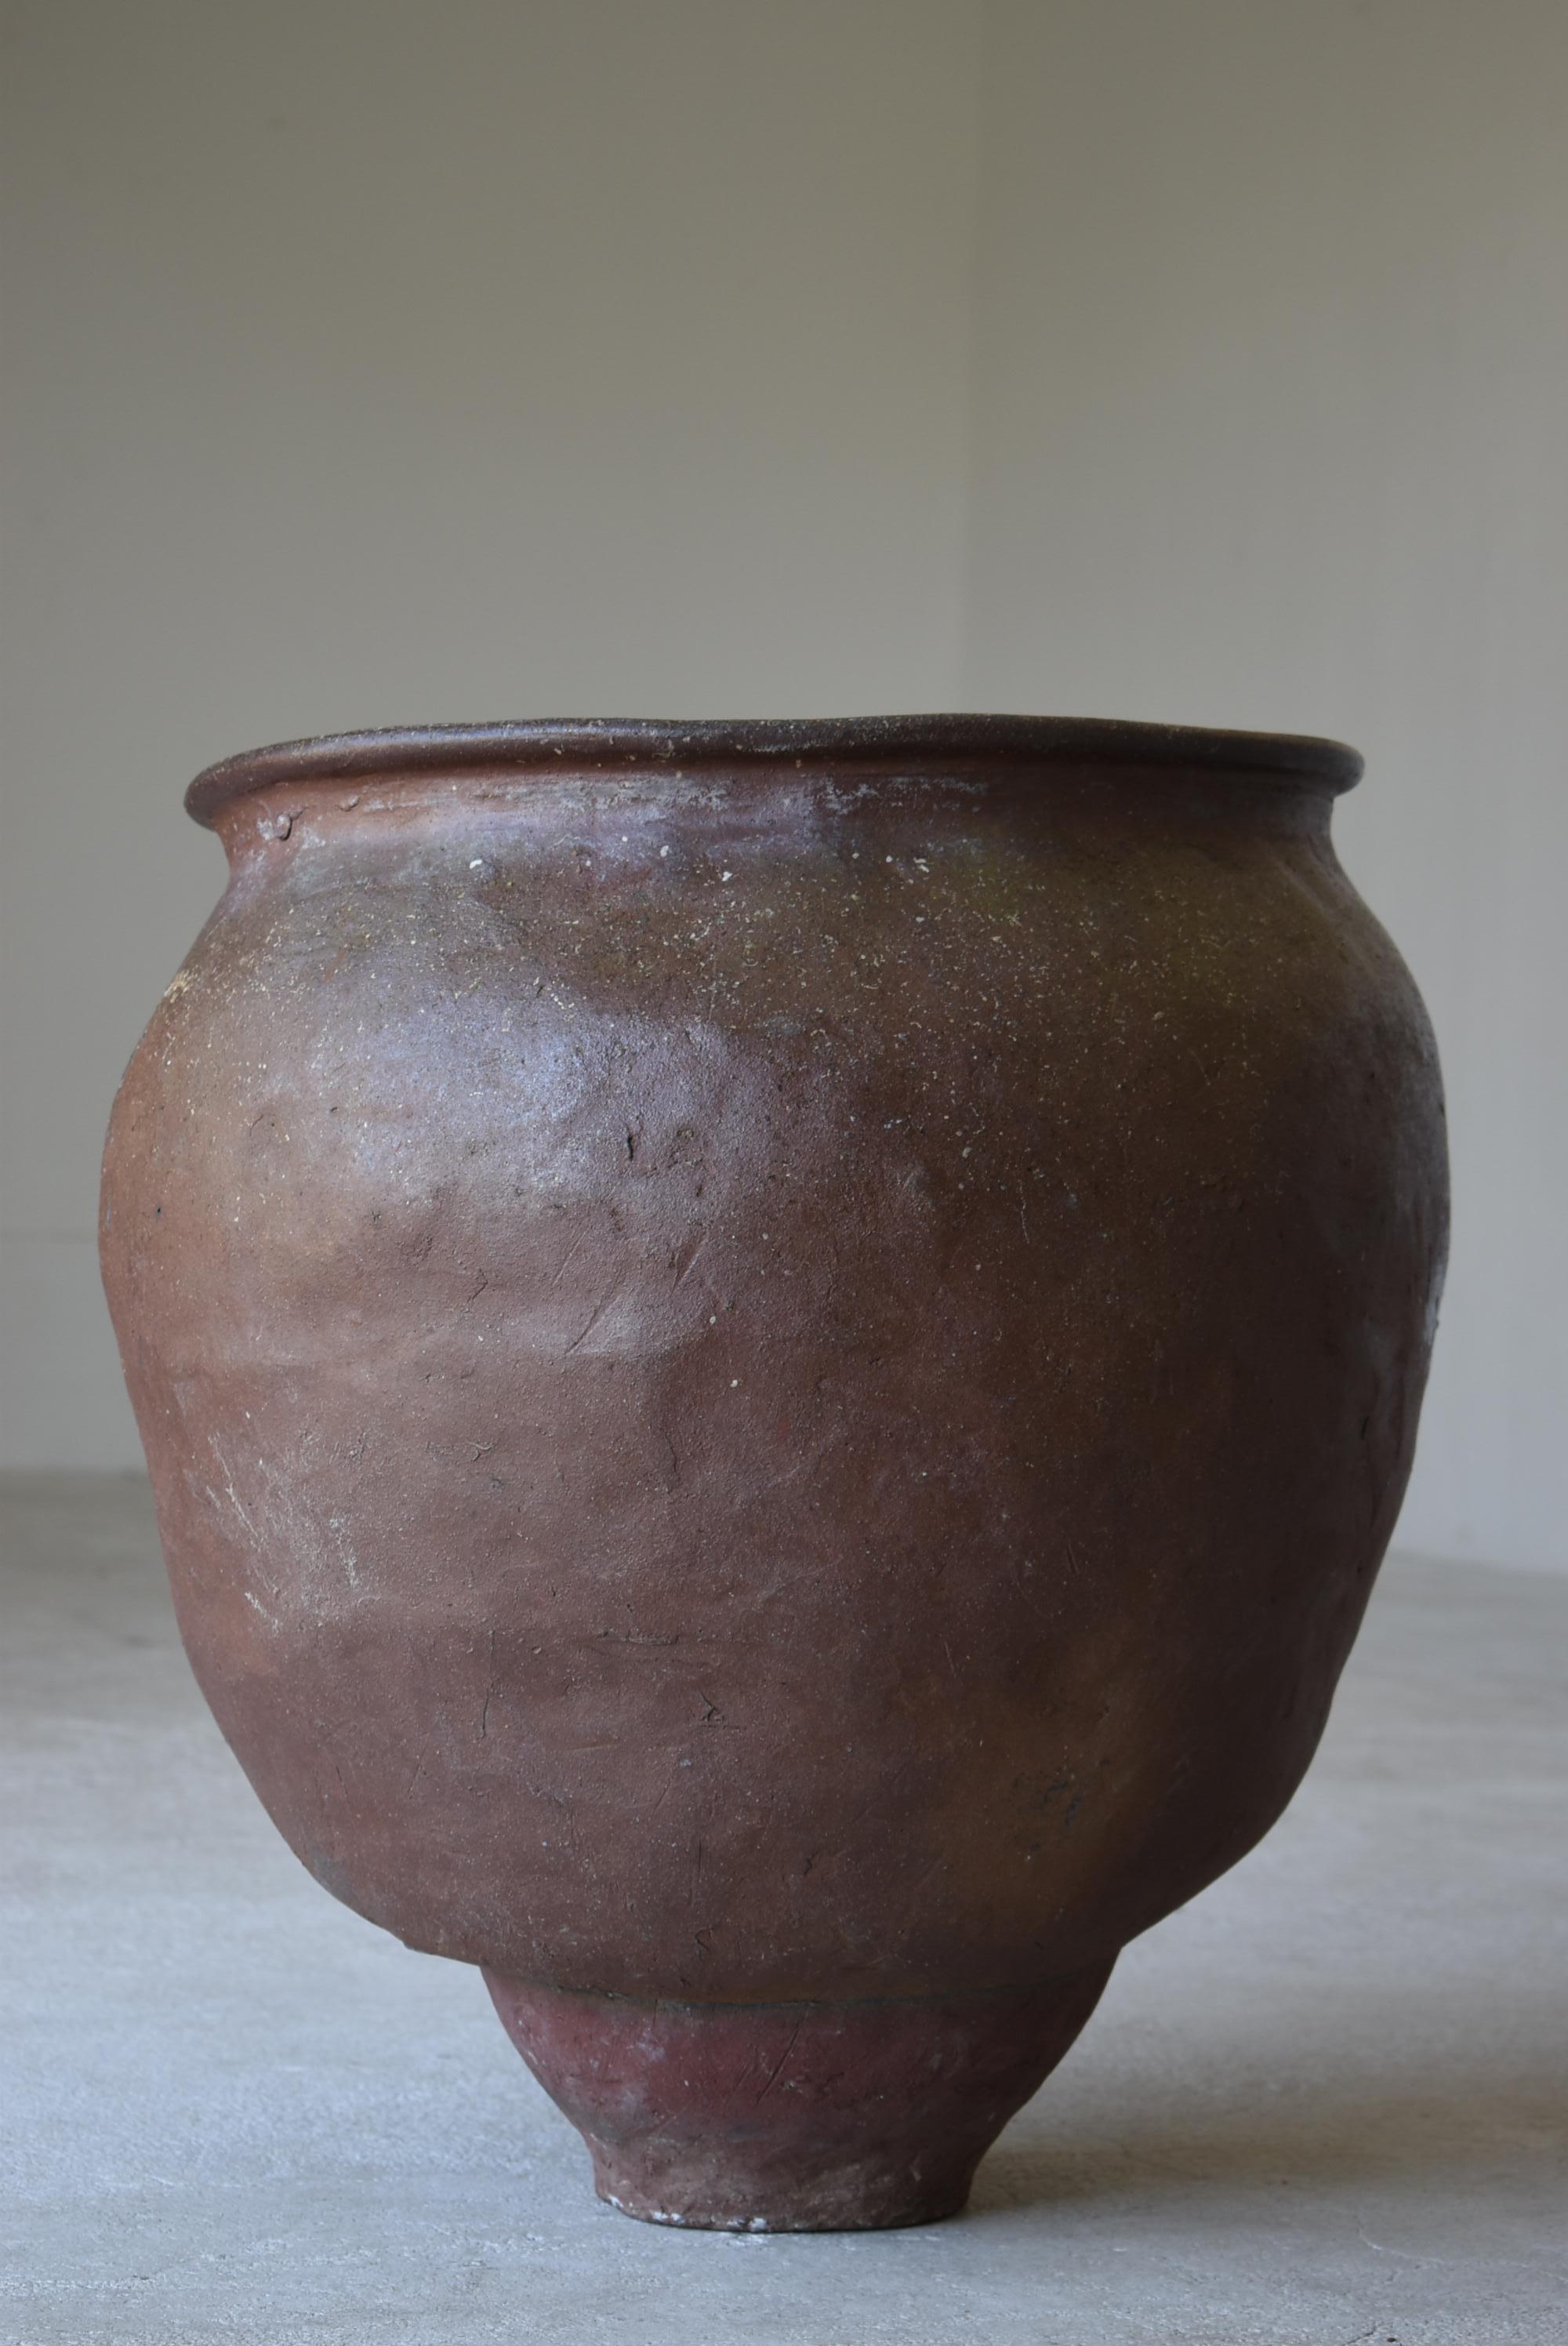 Japanese Old Pottery 1700s-1800s/Antique Flower Vase Vessel Jar Tsubo Wabisabi 2